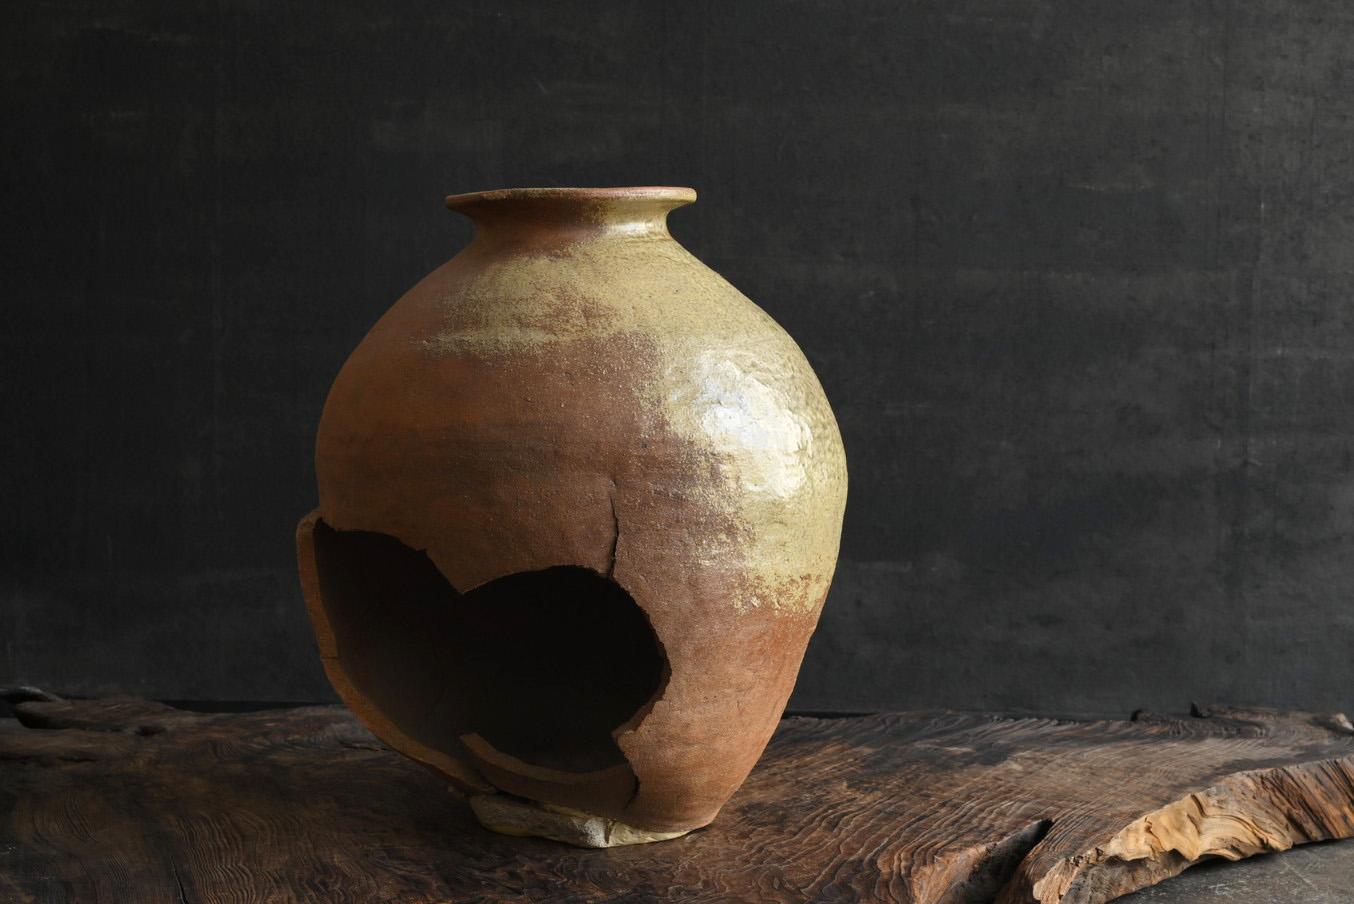 J'aimerais vous présenter des poteries anciennes japonaises rares et intéressantes.
C'est ce qu'on appelle au Japon le 